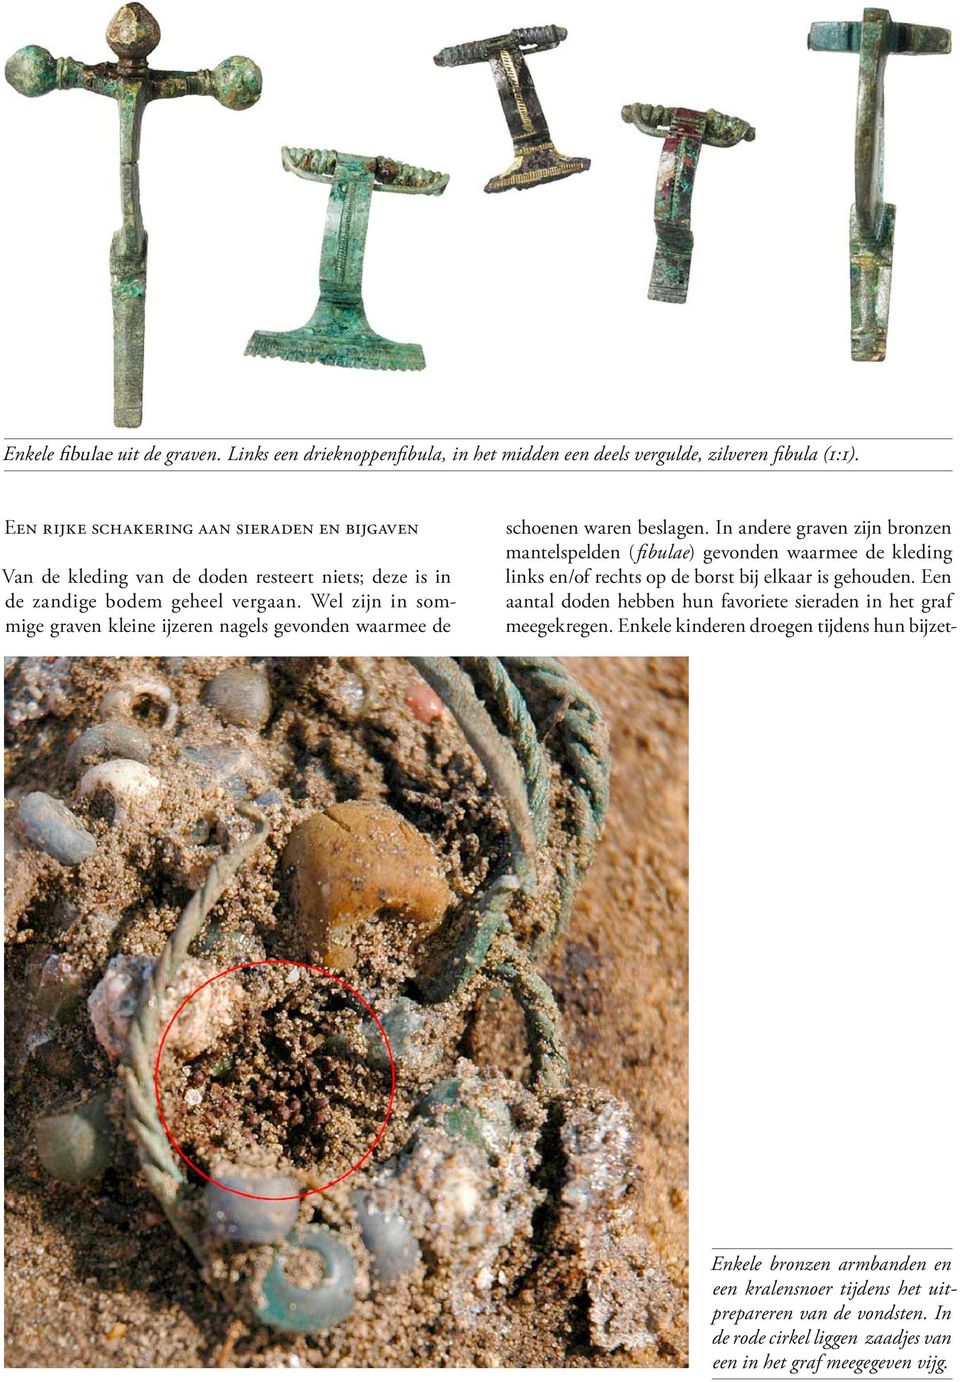 Wel zijn in sommige graven kleine ijzeren nagels gevonden waarmee de schoenen waren beslagen.